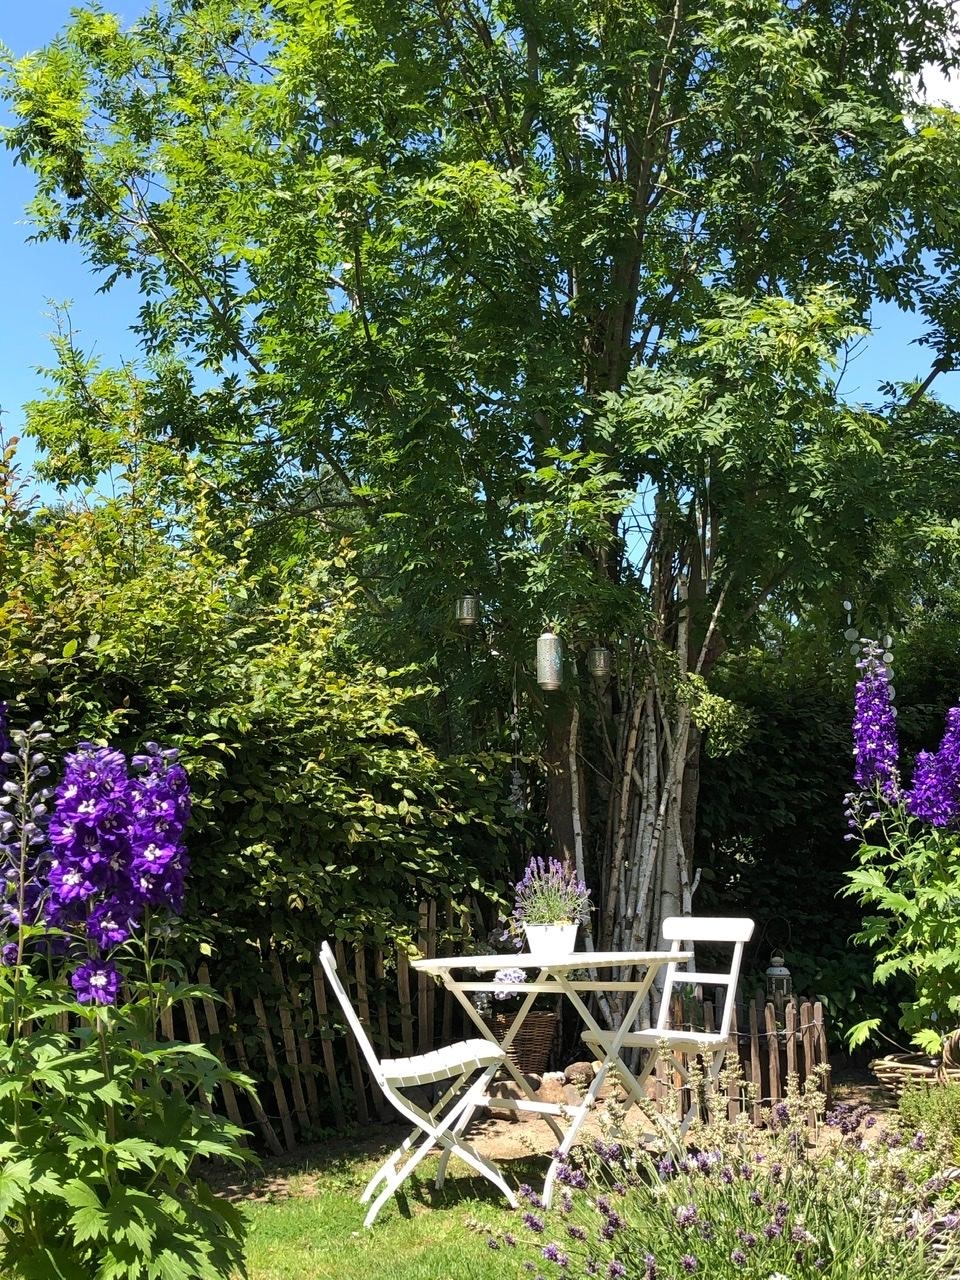 #Sommerfreuden - Sonne satt und blauer Himmel 
#gartenliebe #rittersporn #lavendel #sitzecke #laternen #gartenglück 